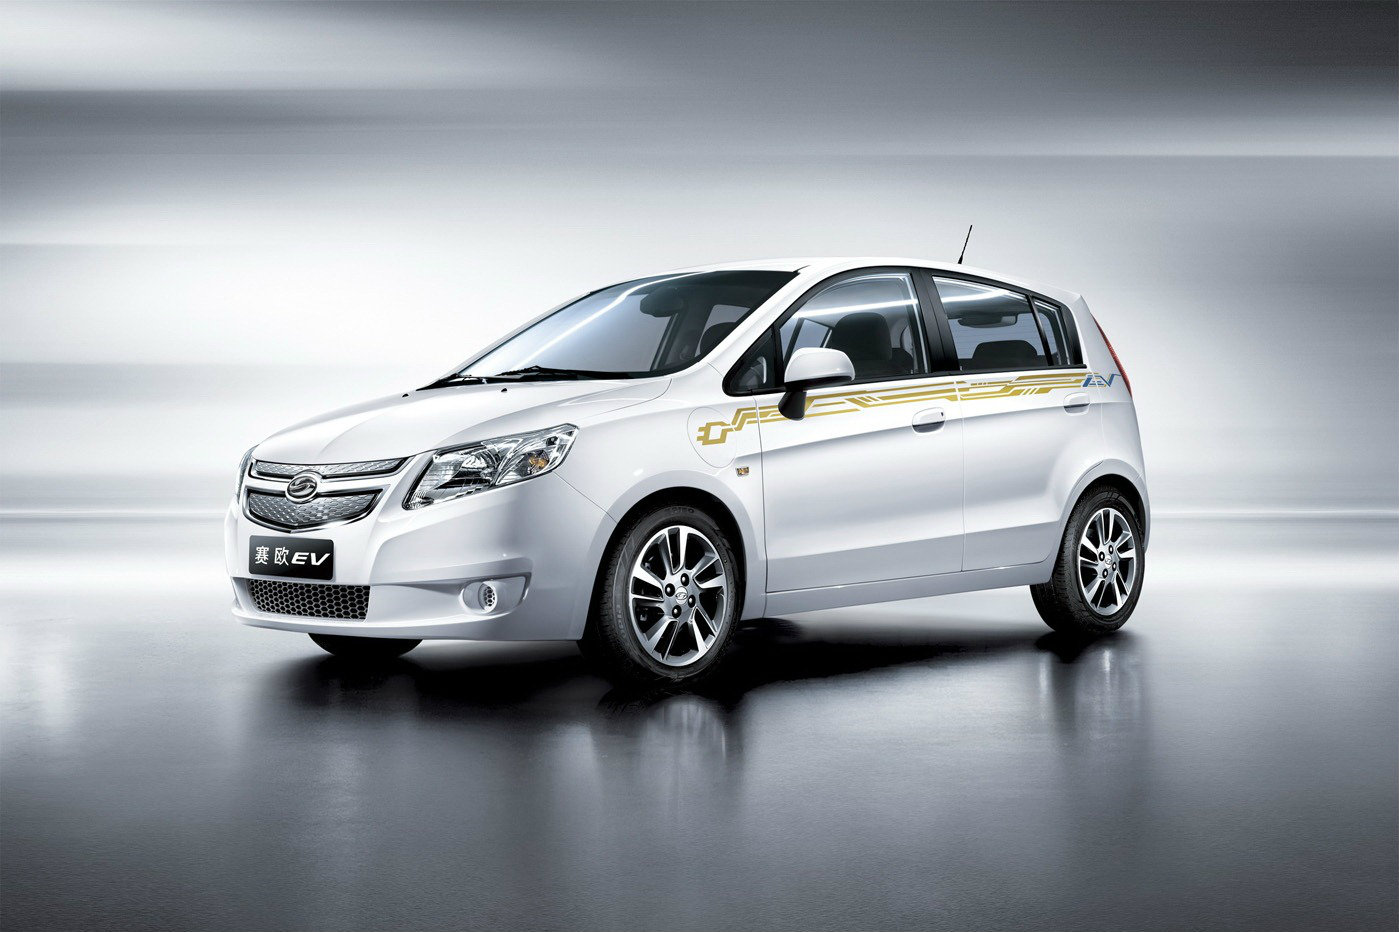 Shanghai GM's Springo EV รถไฟฟ้าจากจีนในราคาแค่ 1.29 ล้านบาท